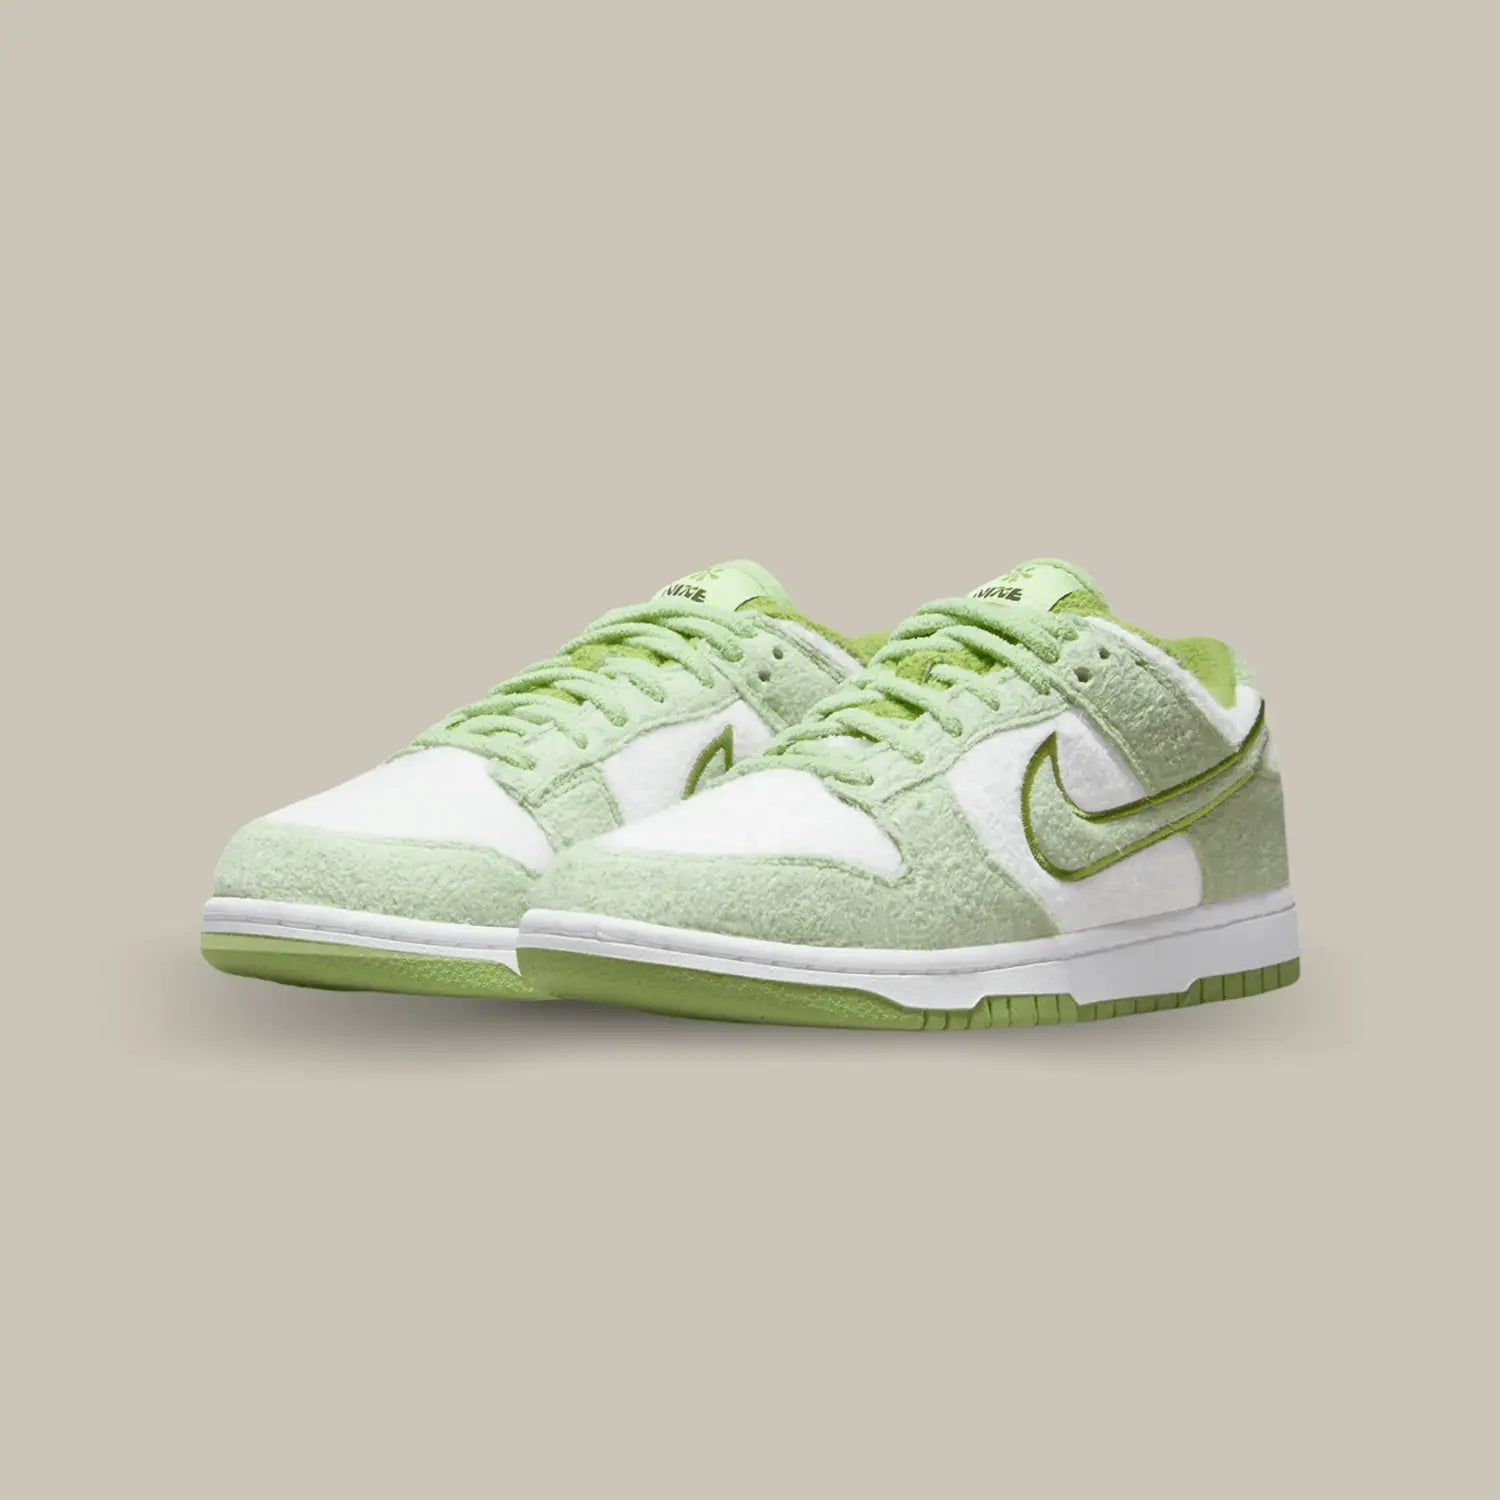 La Nike Dunk Low SE Fleece Green affiche une matière polaire qui recouvre l’ensemble de l’empeigne. Des empiècements vert melon s’associent aux parties blanches.